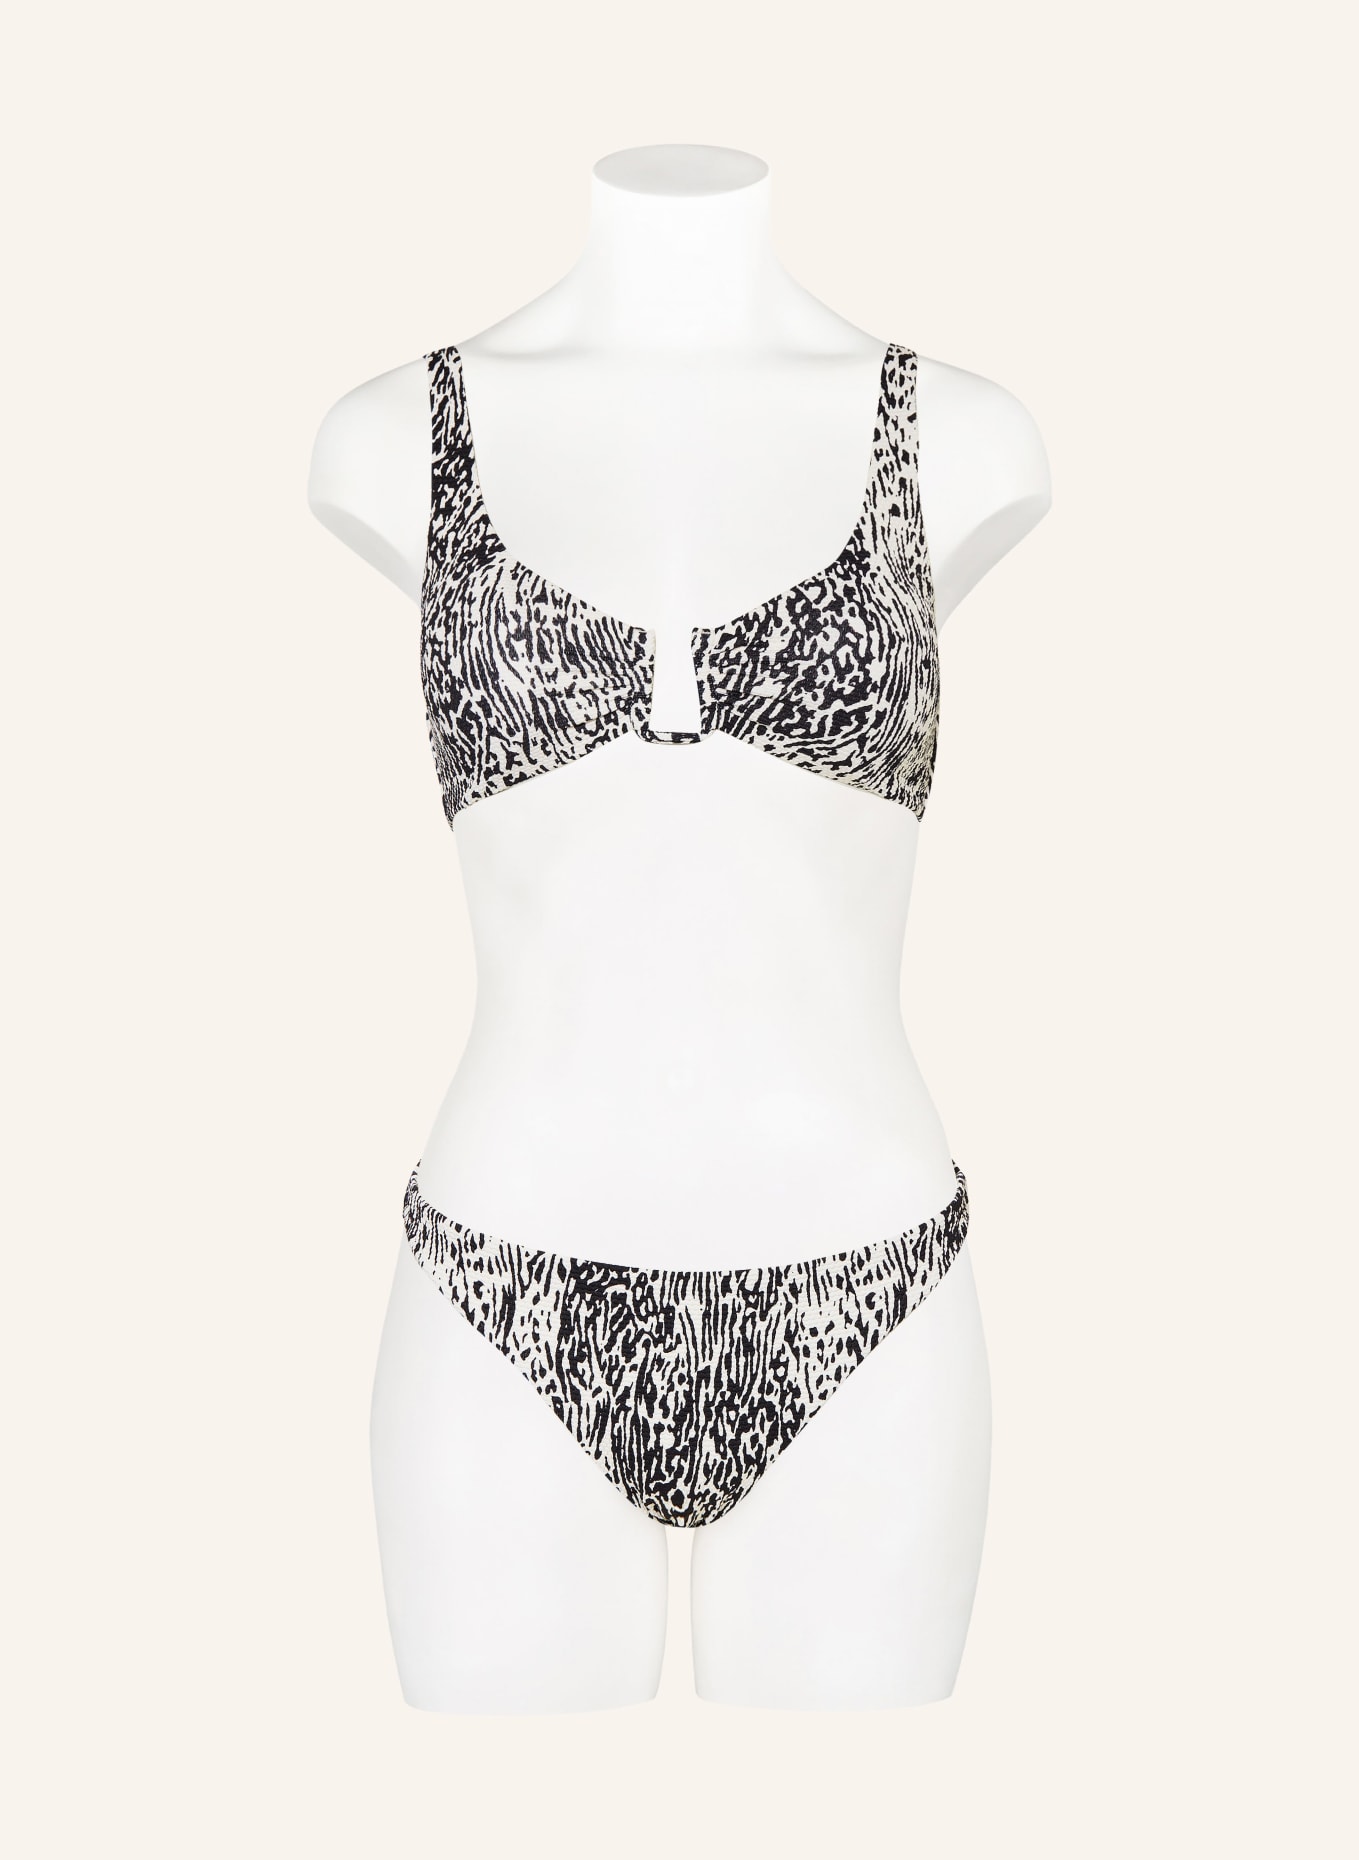 SAM FRIDAY Bralette bikini top SWASH, Color: BLACK/ WHITE (Image 2)